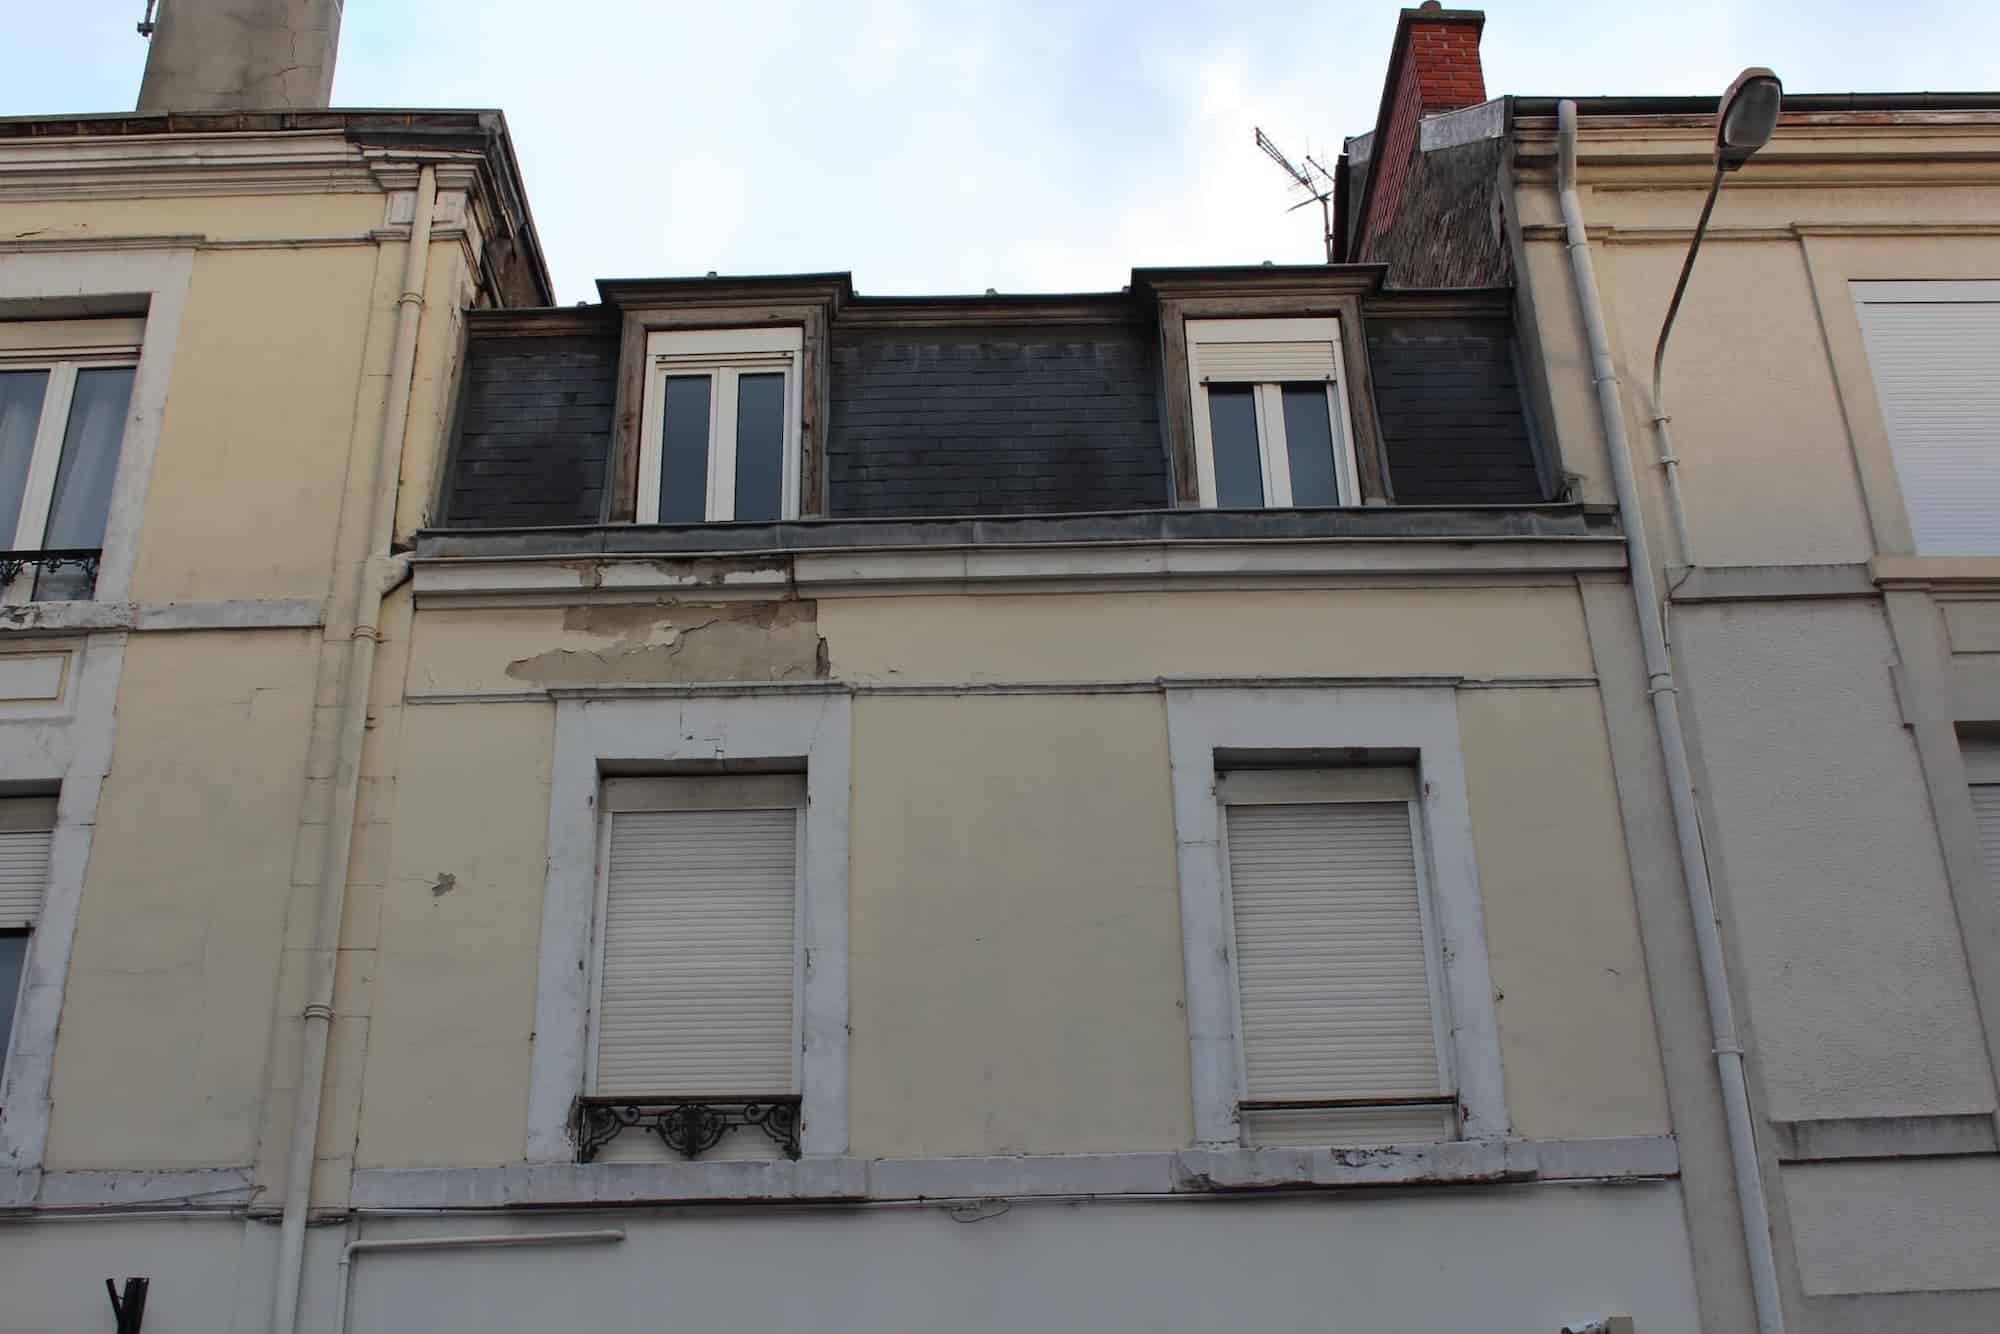 Réfection des corniches et des façades d'une bâtisse à Reims